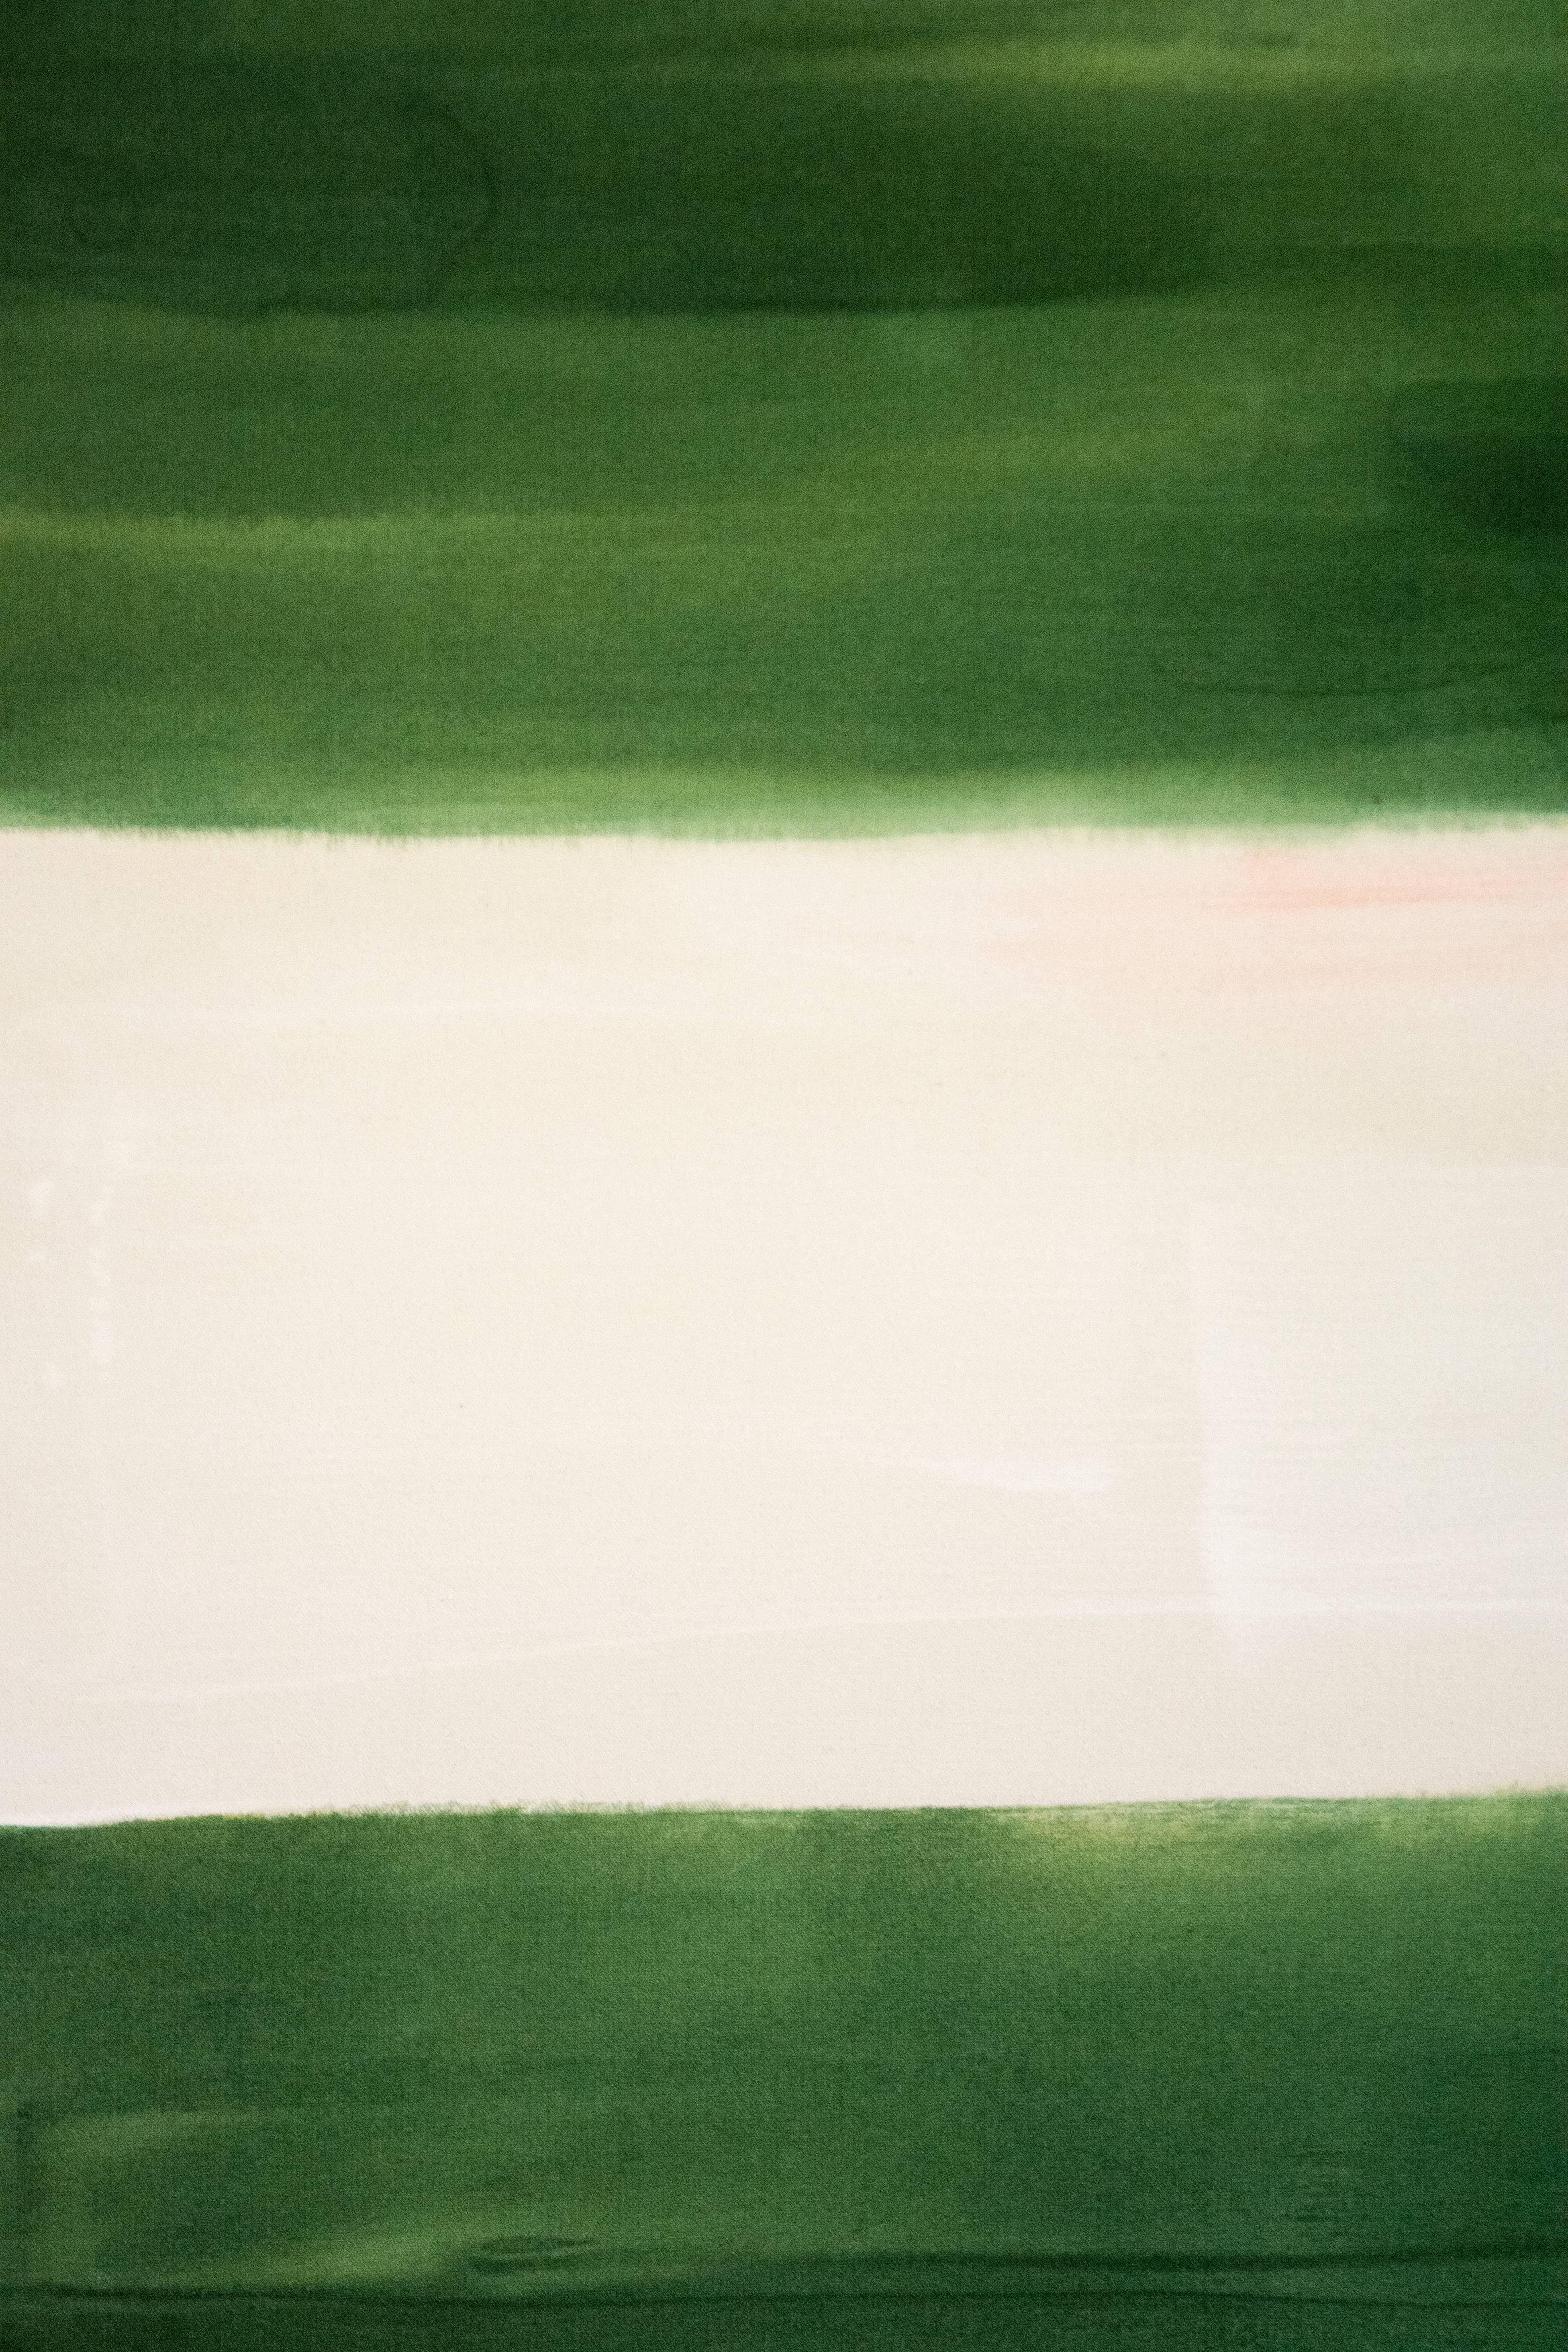 Judd - groß, blau, grün, abstrakt, geometrische Komposition, Acryl auf Leinwand (Schwarz), Abstract Painting, von Milly Ristvedt